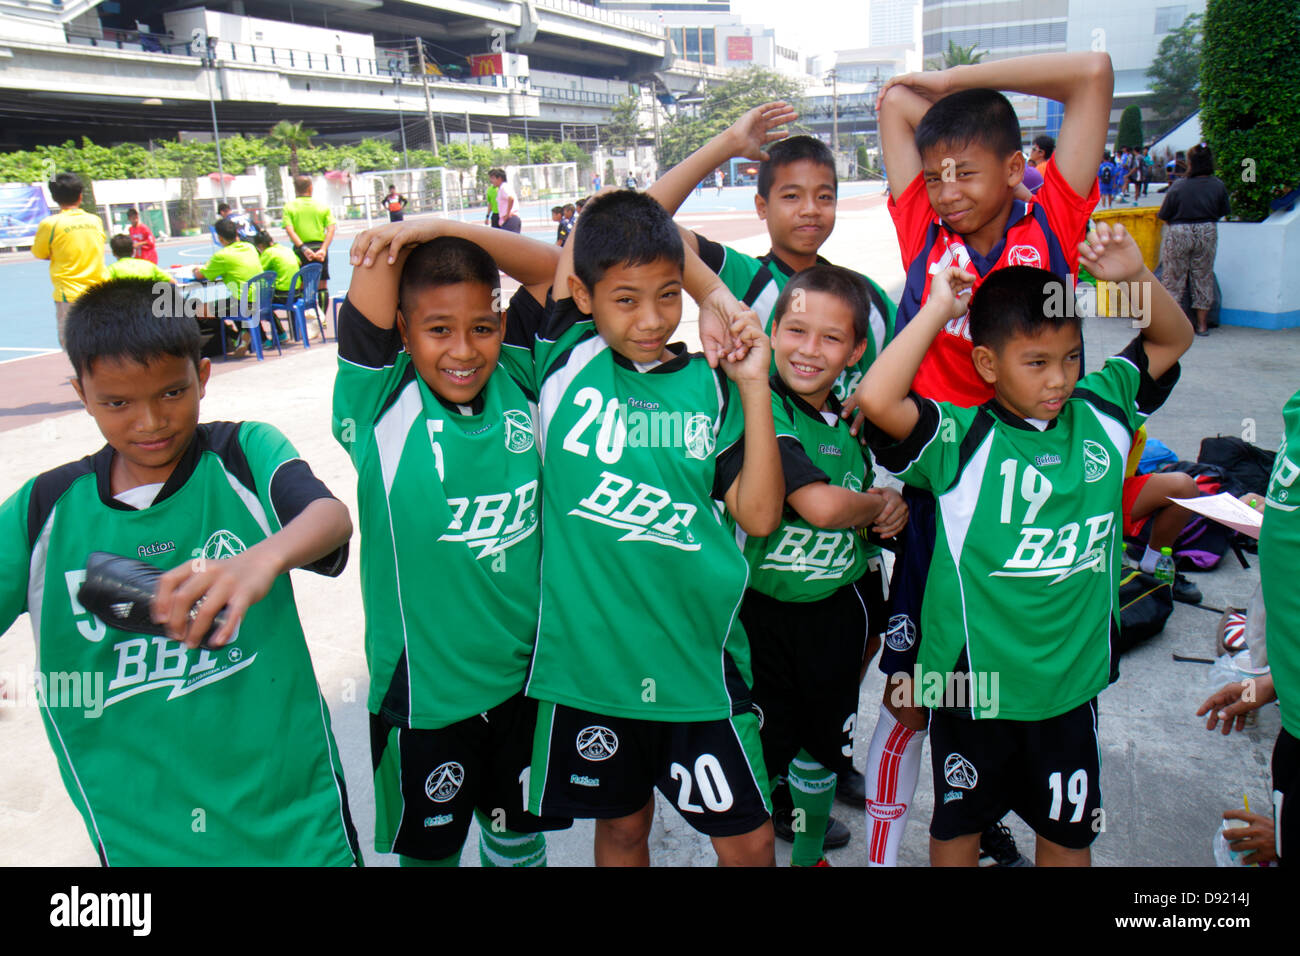 Bangkok Thailand, Thai, Pathum Wan, Rama 1 Road, Nationalstadion, Fußball-Fußball-Fußball-Futbol, asiatische Jungen männlich Kinder Kinder Studenten Team, Teamkollegen, Stockfoto